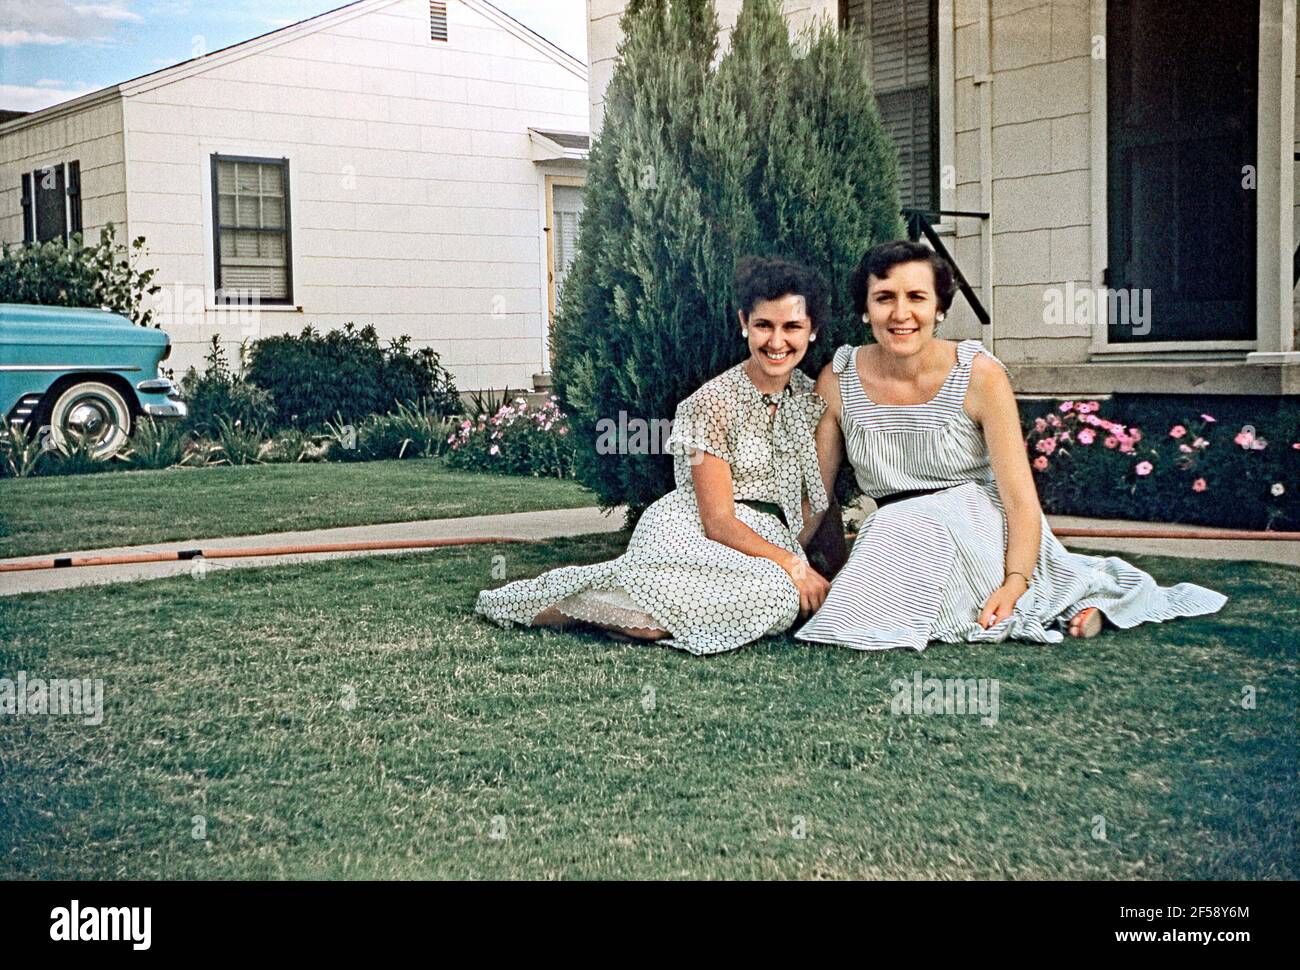 Zwei Frauen posieren auf einem vorderen Rasen neben ihrer S-Zufahrt, USA c. 1960. Die Frauen tragen ihre besten Kleider und lächeln für die Kamera. Dieses Bild stammt von einem alten amerikanischen Amateur Kodak Farbtransparenz - ein Vintage 1950s/1960s Foto. Stockfoto